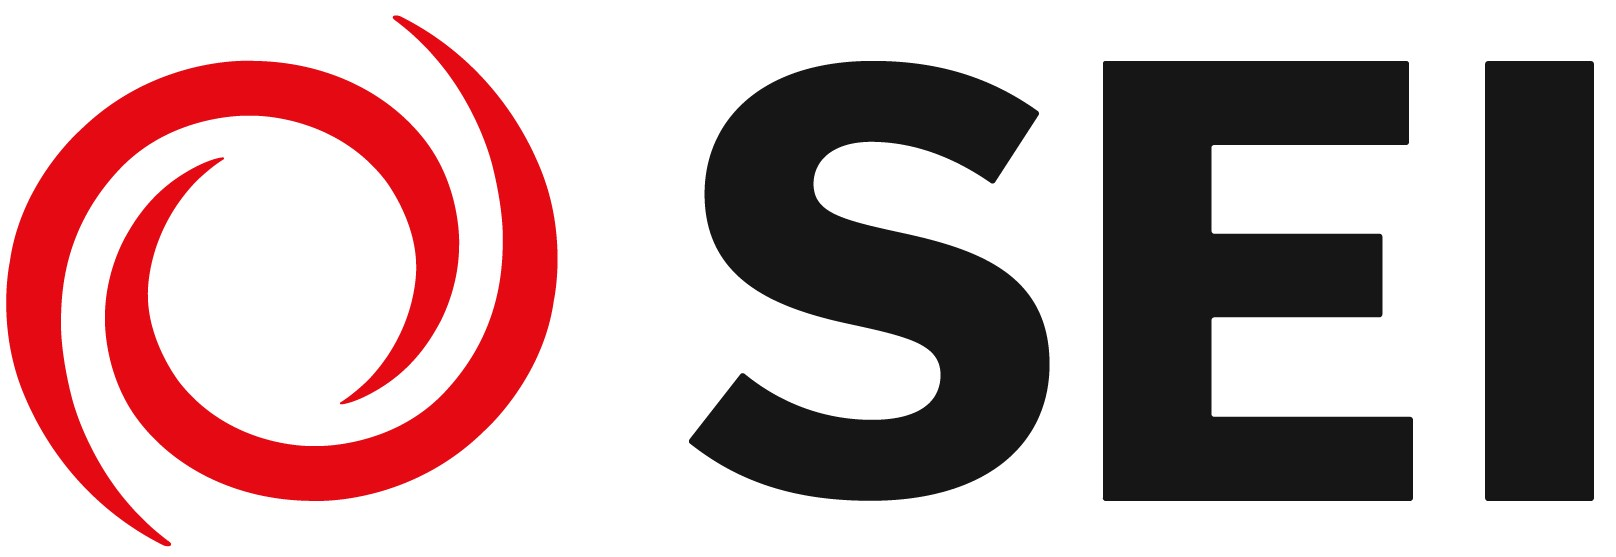 Systems Evolution, Inc. (SEI) logo